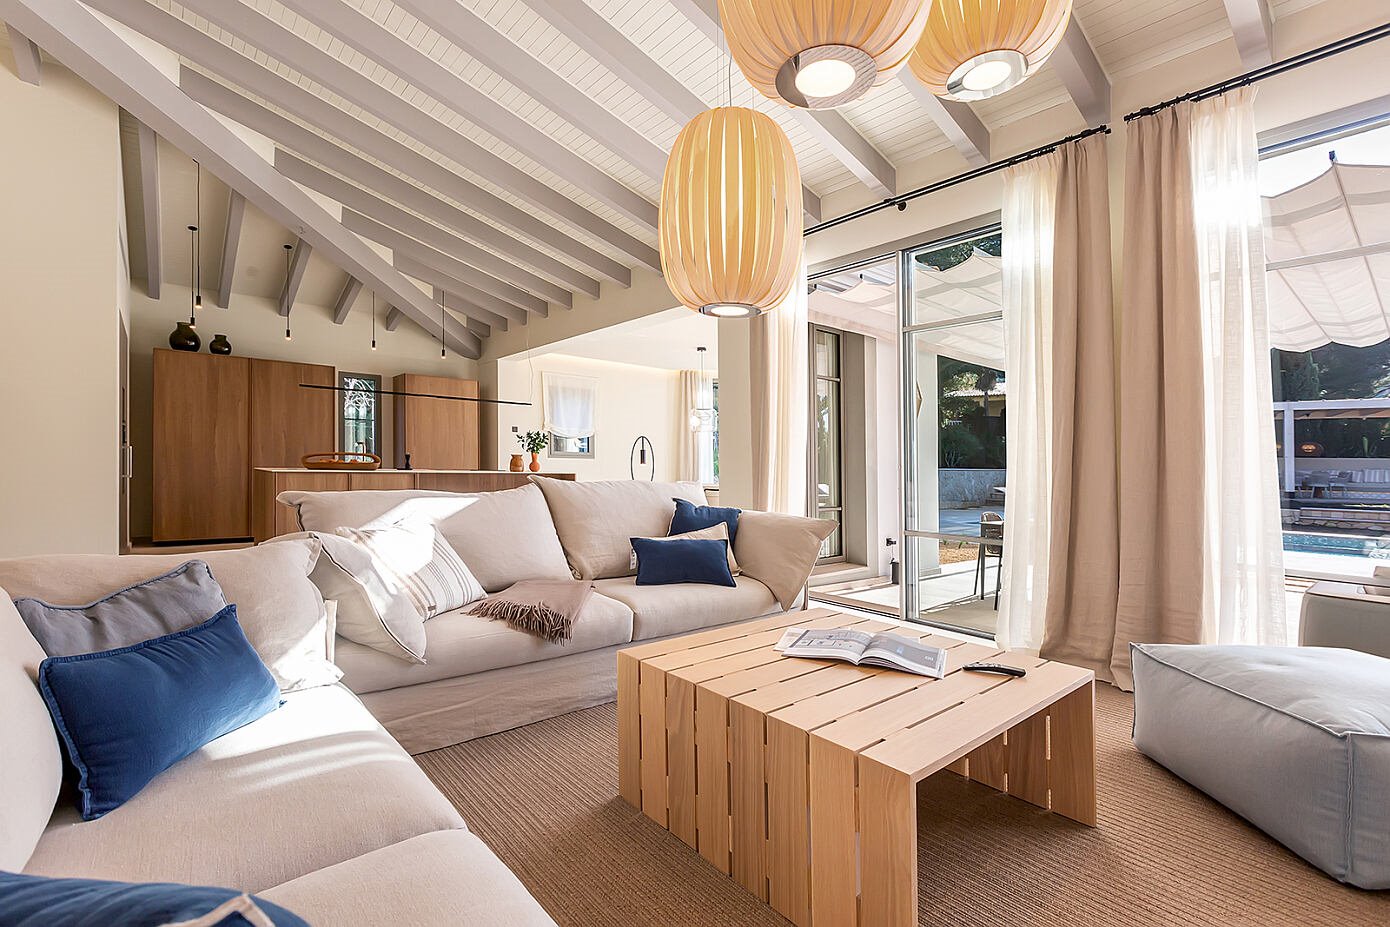 Casa moderna de campo en Mallorca con decoracion mediterranea salon con vigas de madera